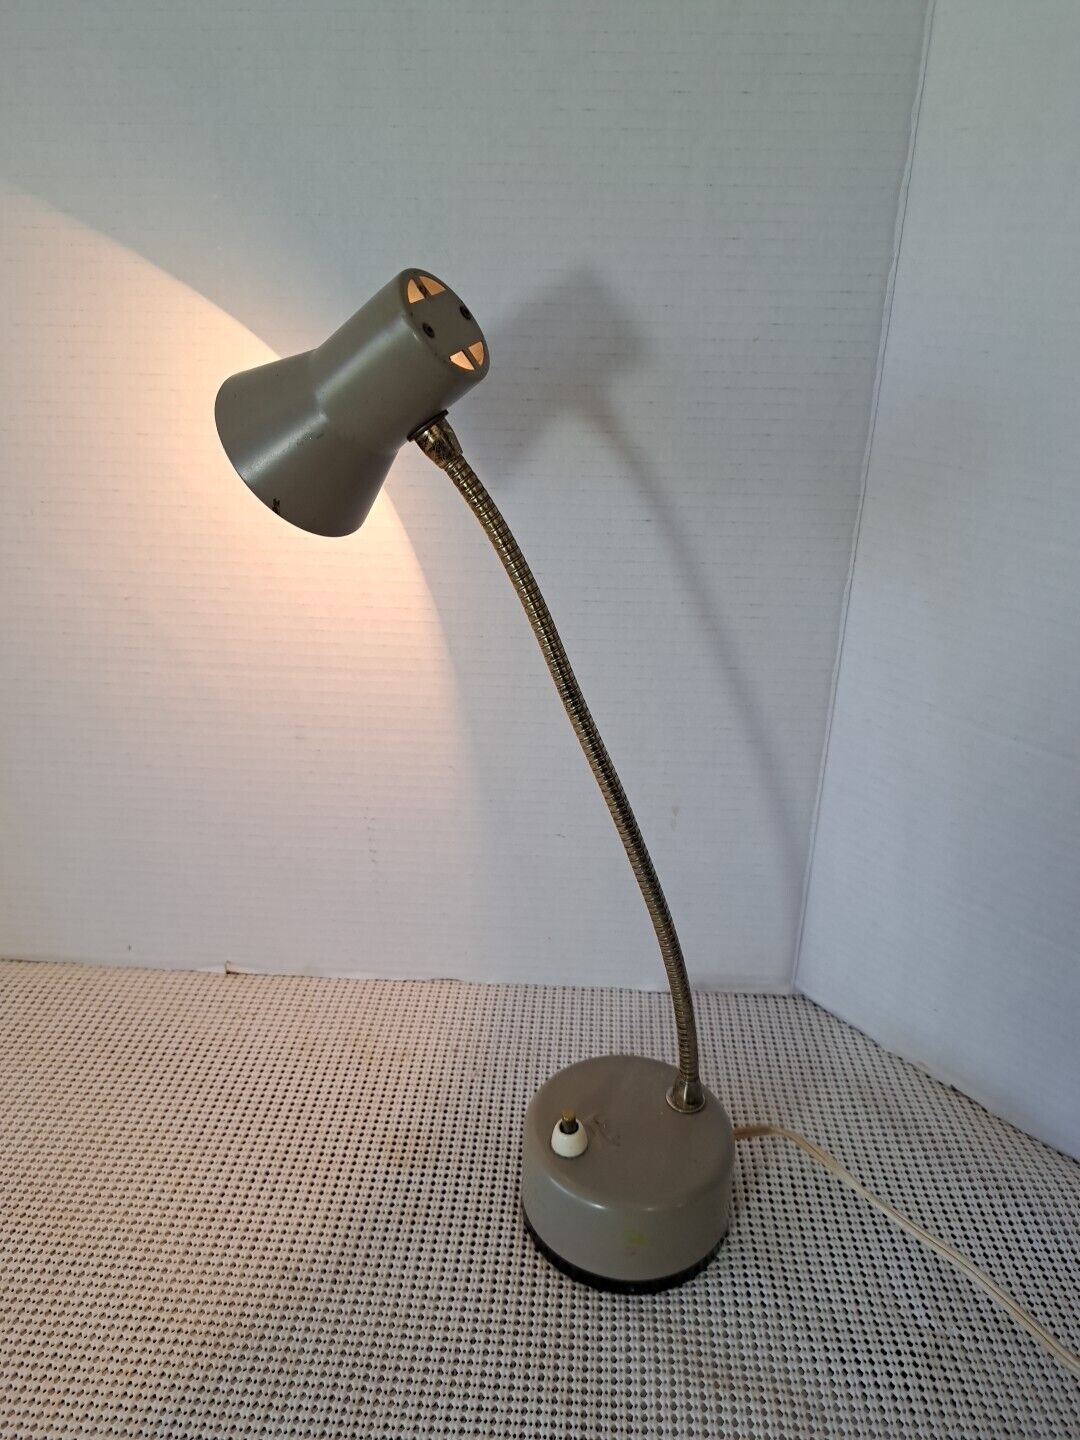 Vtg 1950s Mobilite Mobilette Gooseneck Flexible Desk Lamp Portable WORKS